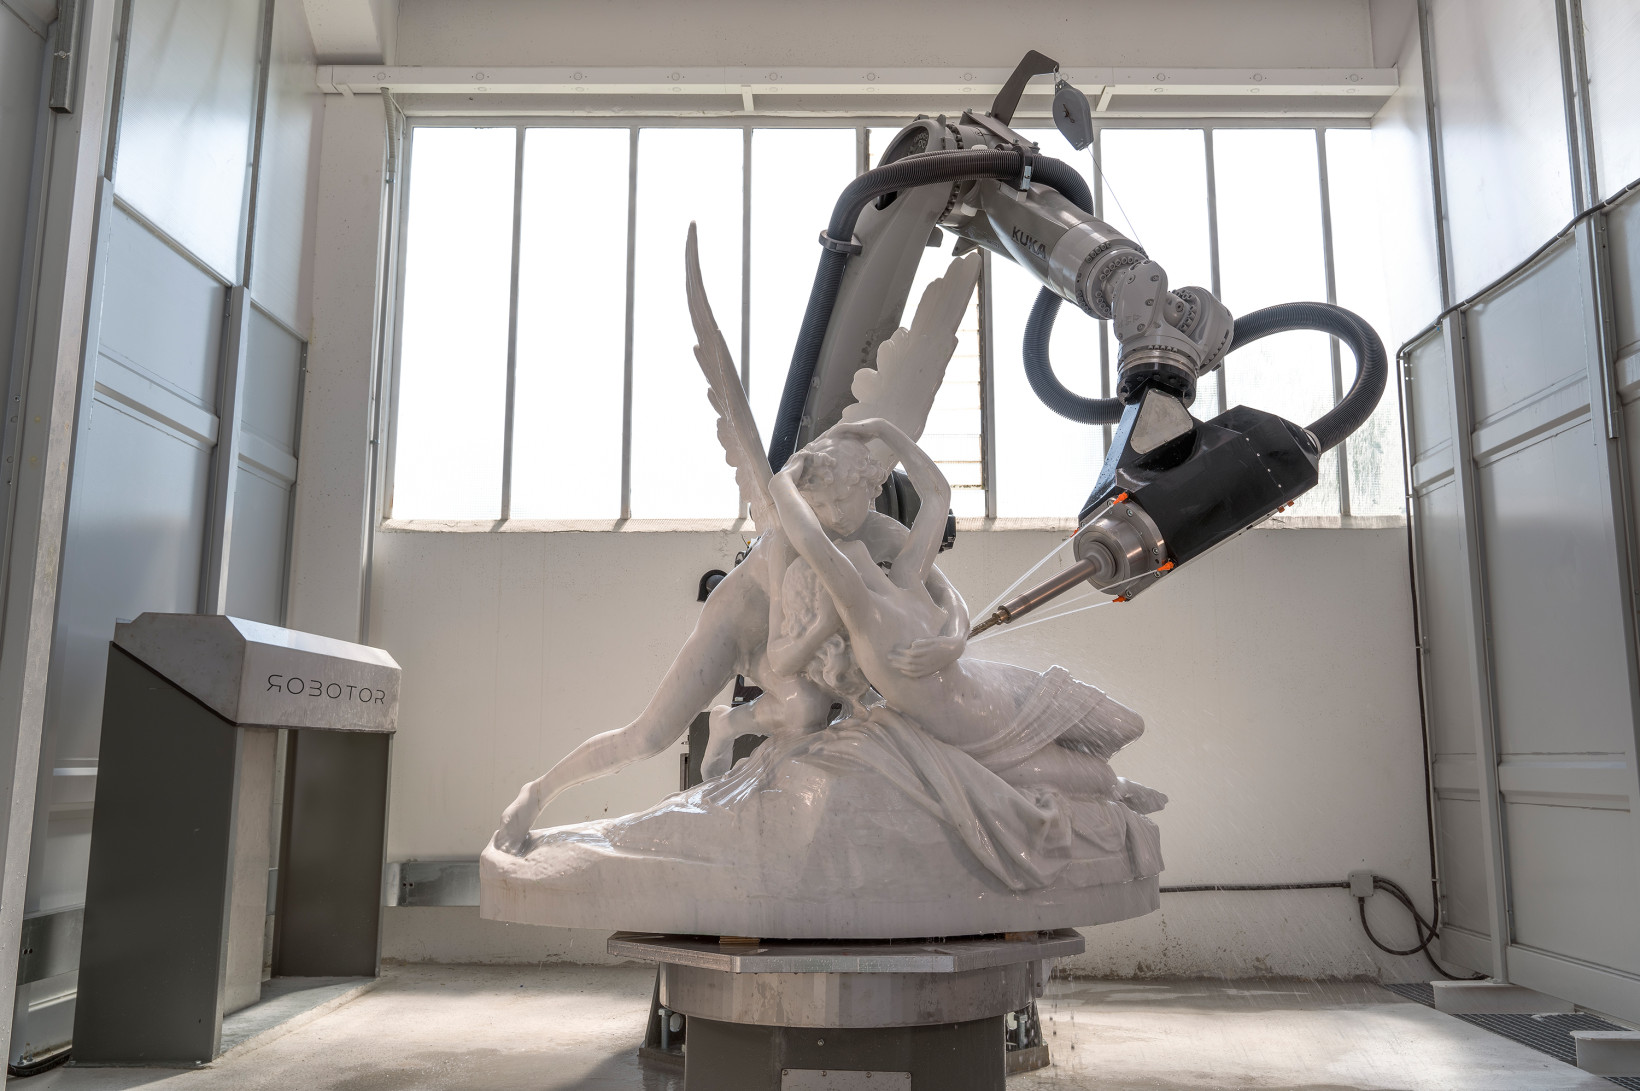 Amore e psiche sculpture Robotor 